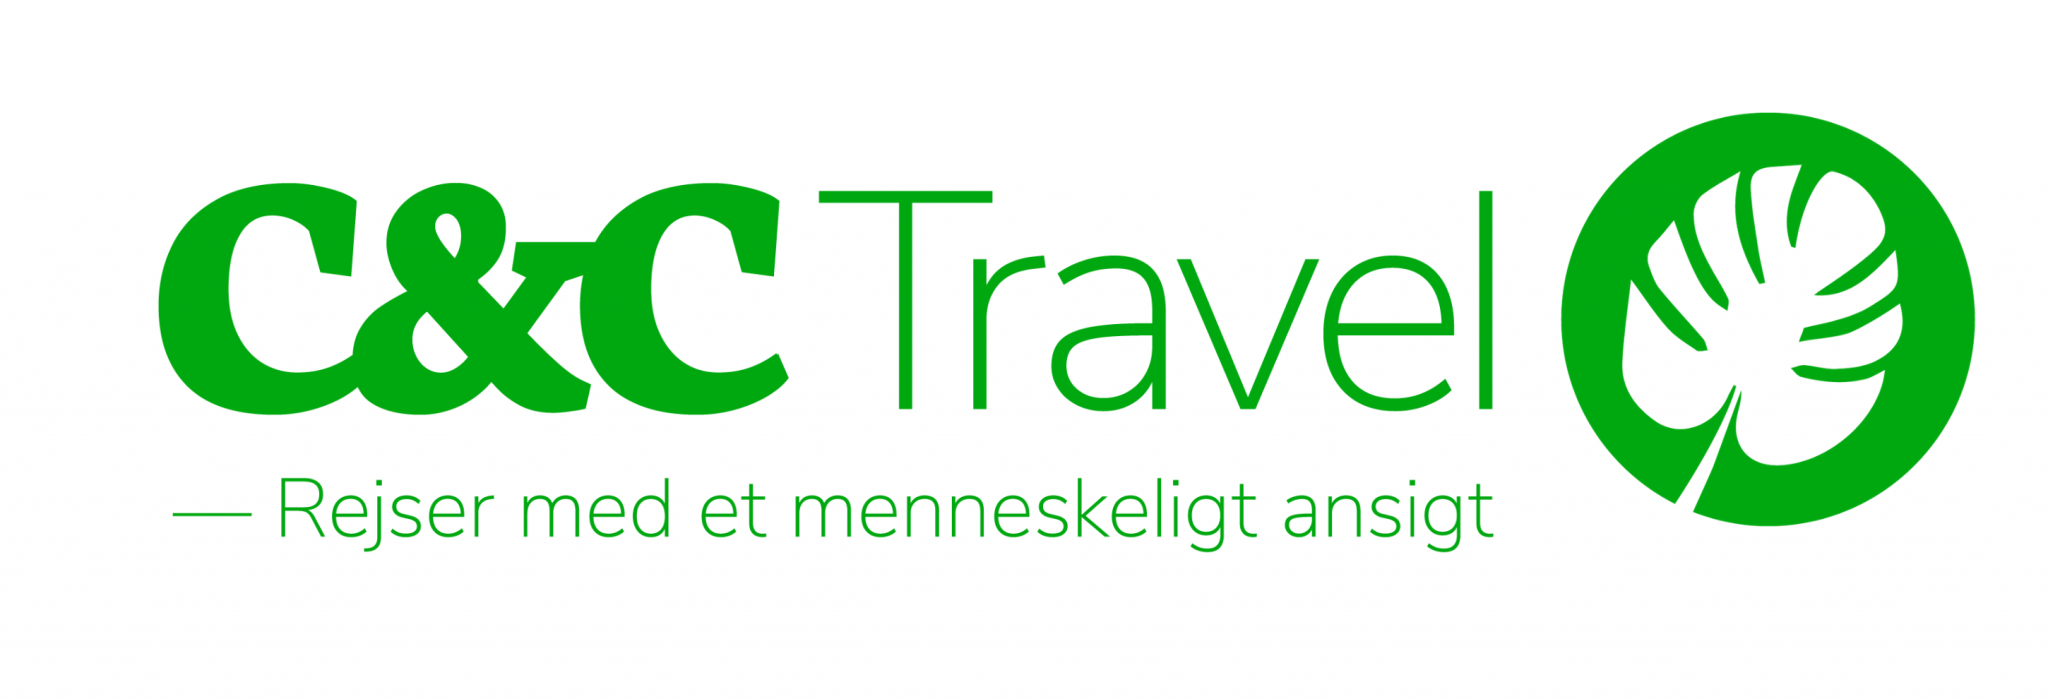 C&C Travel - Rejseblog